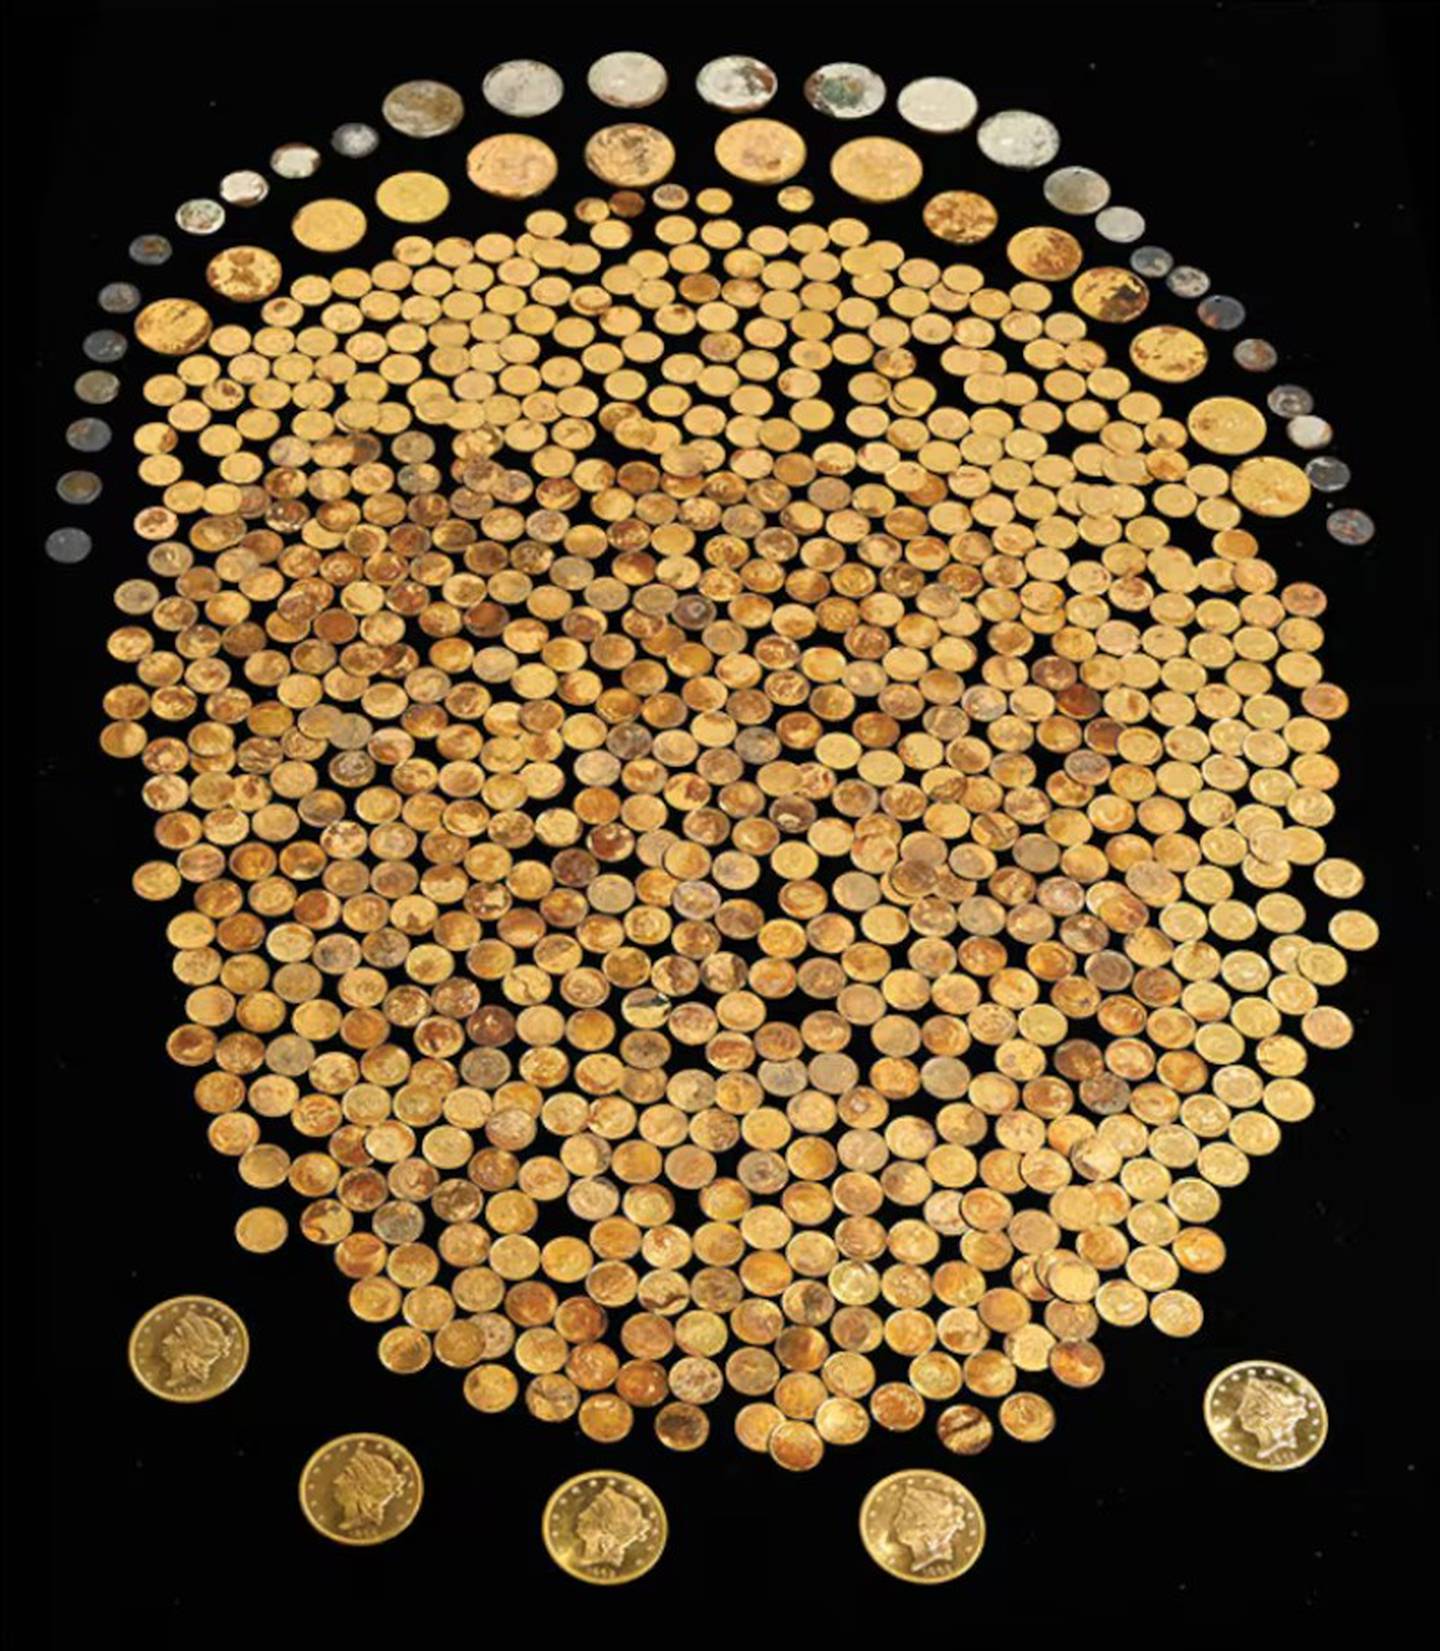 El tesoro está compuesto por monedas de oro